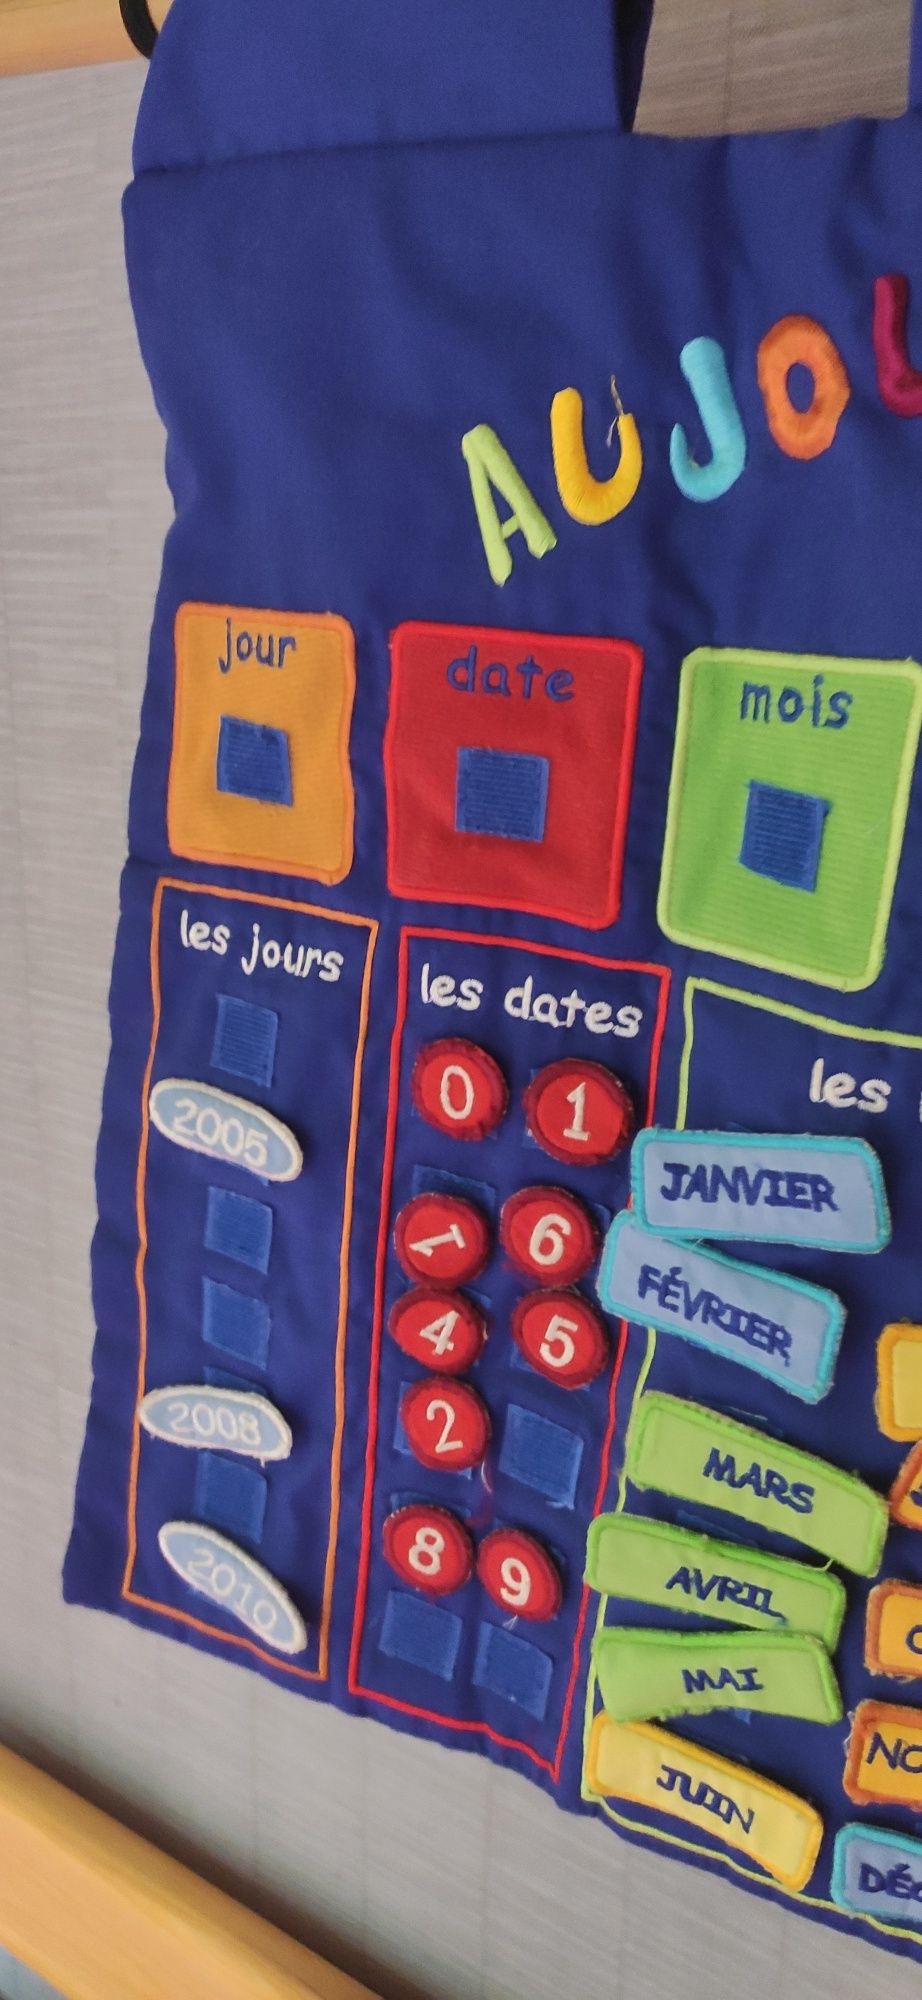 Календарь на французском языке игровая панель